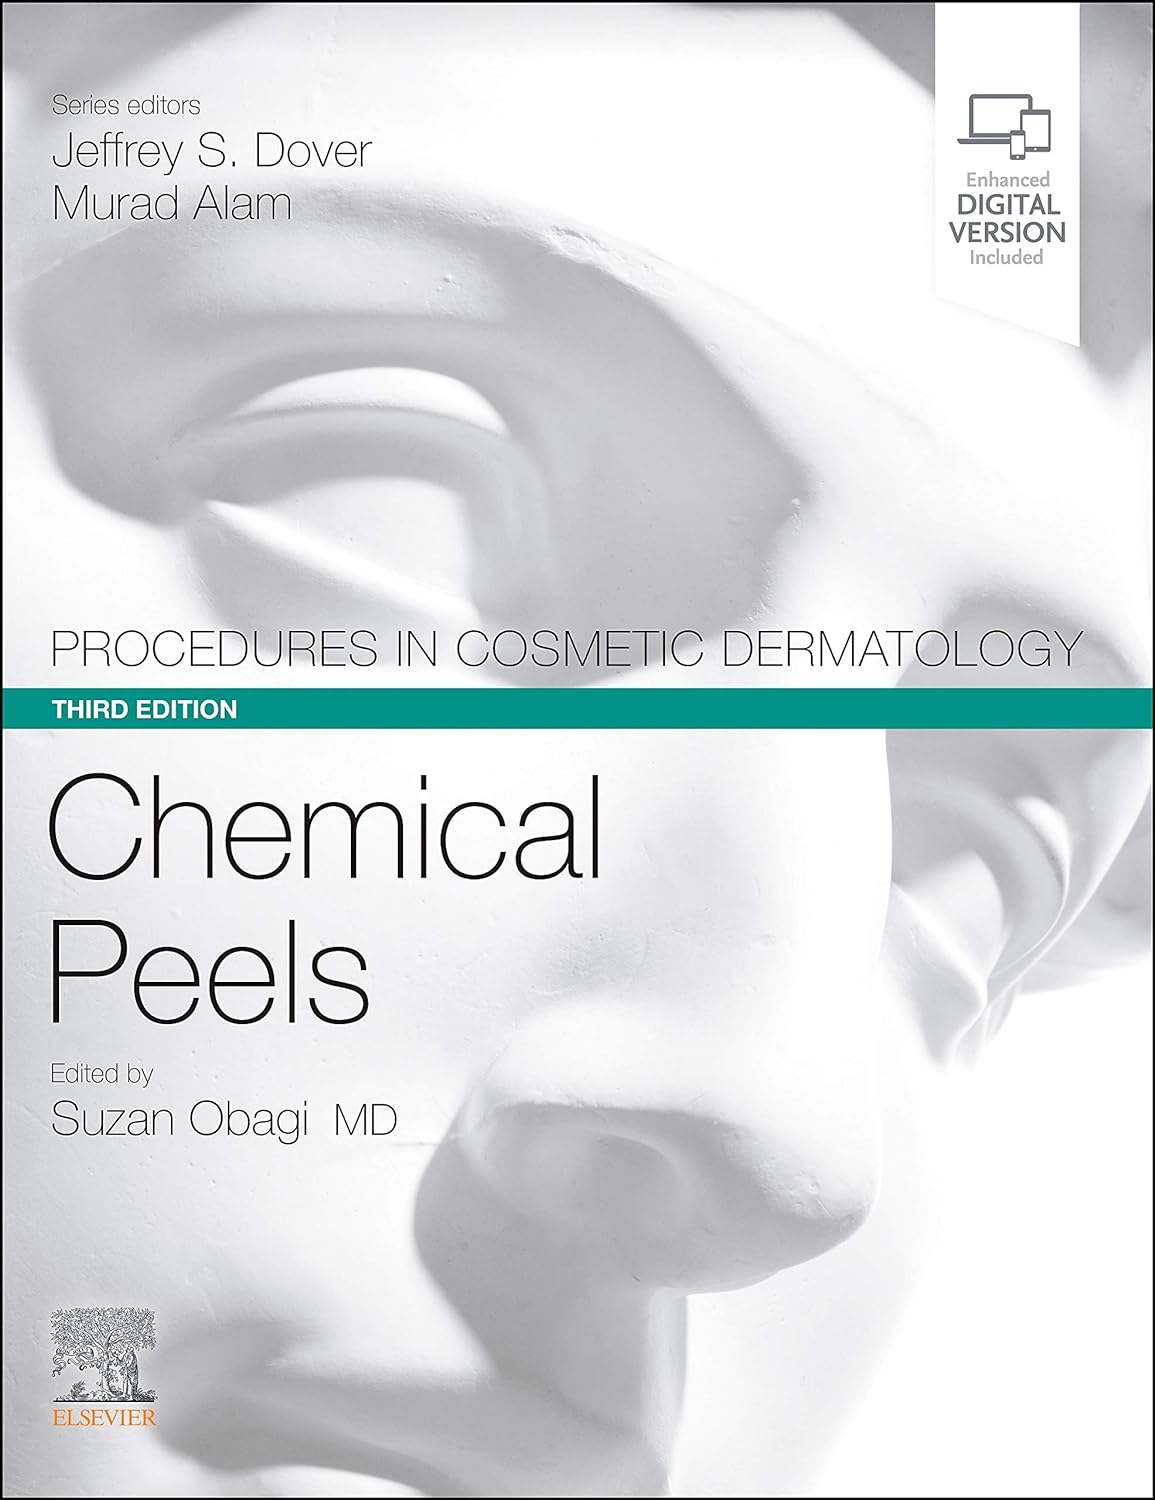 Procedures-in-Cosmetic-Dermatology-Series-Chemical-Peels-3rd-Edition-1.jpg